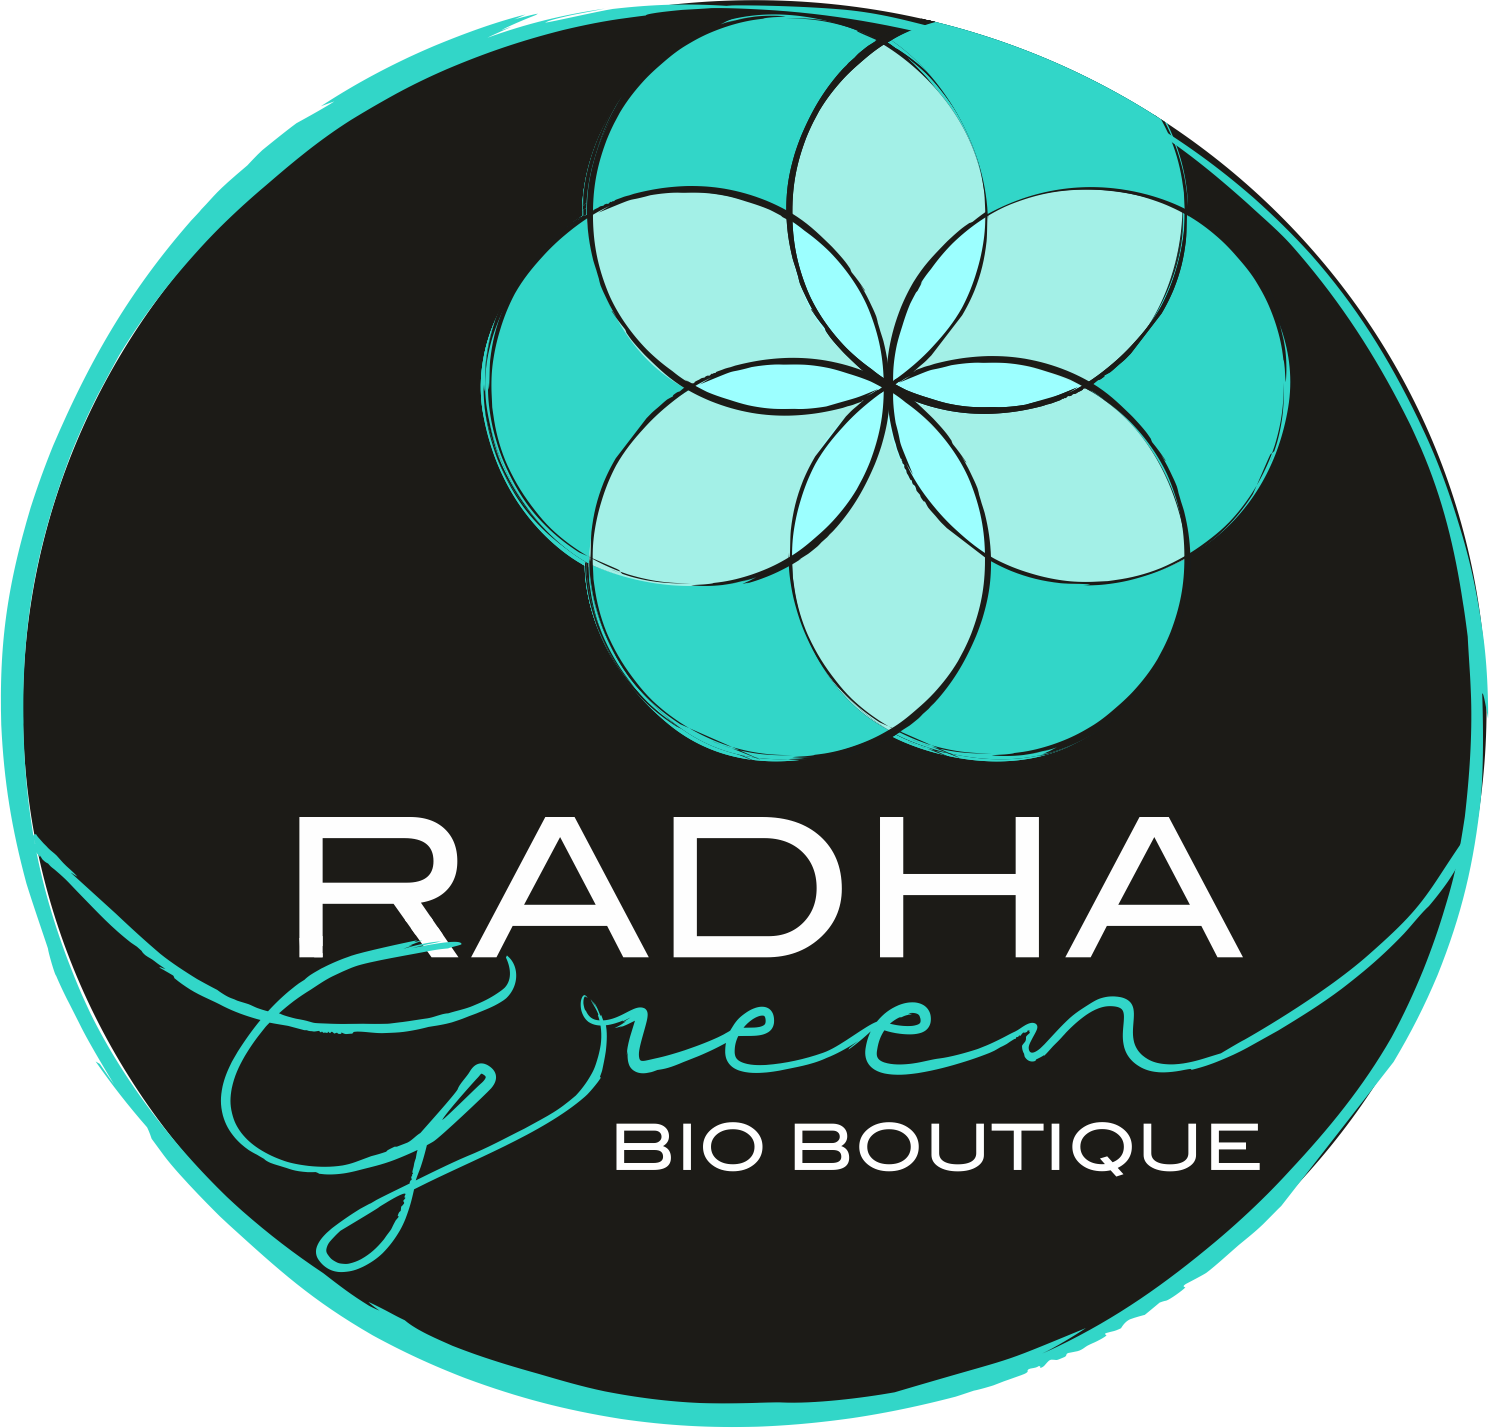 Radha-Green Bio-boutique